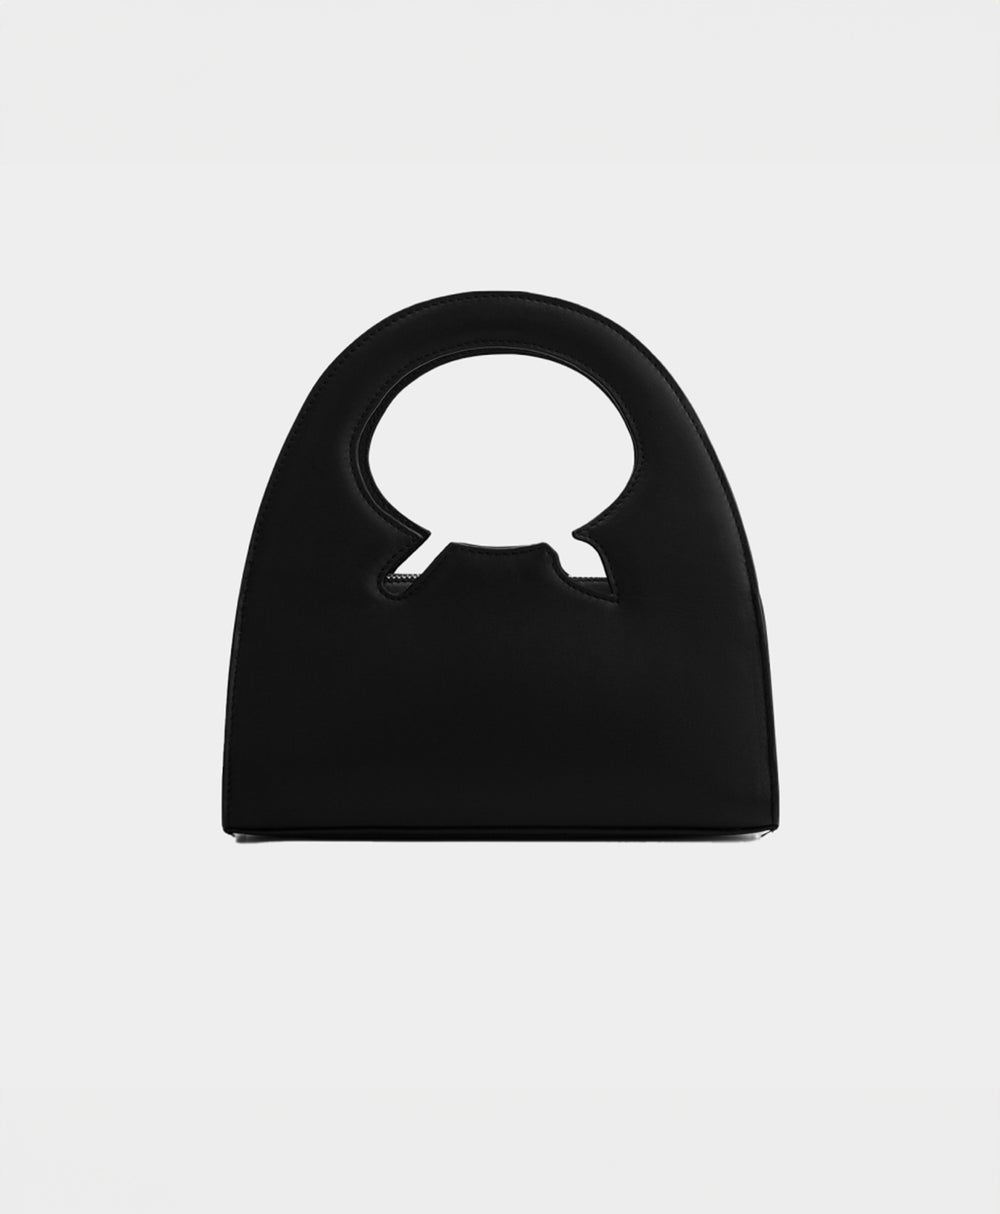 DP - Black Codu Small Bag - Packshot - Rear